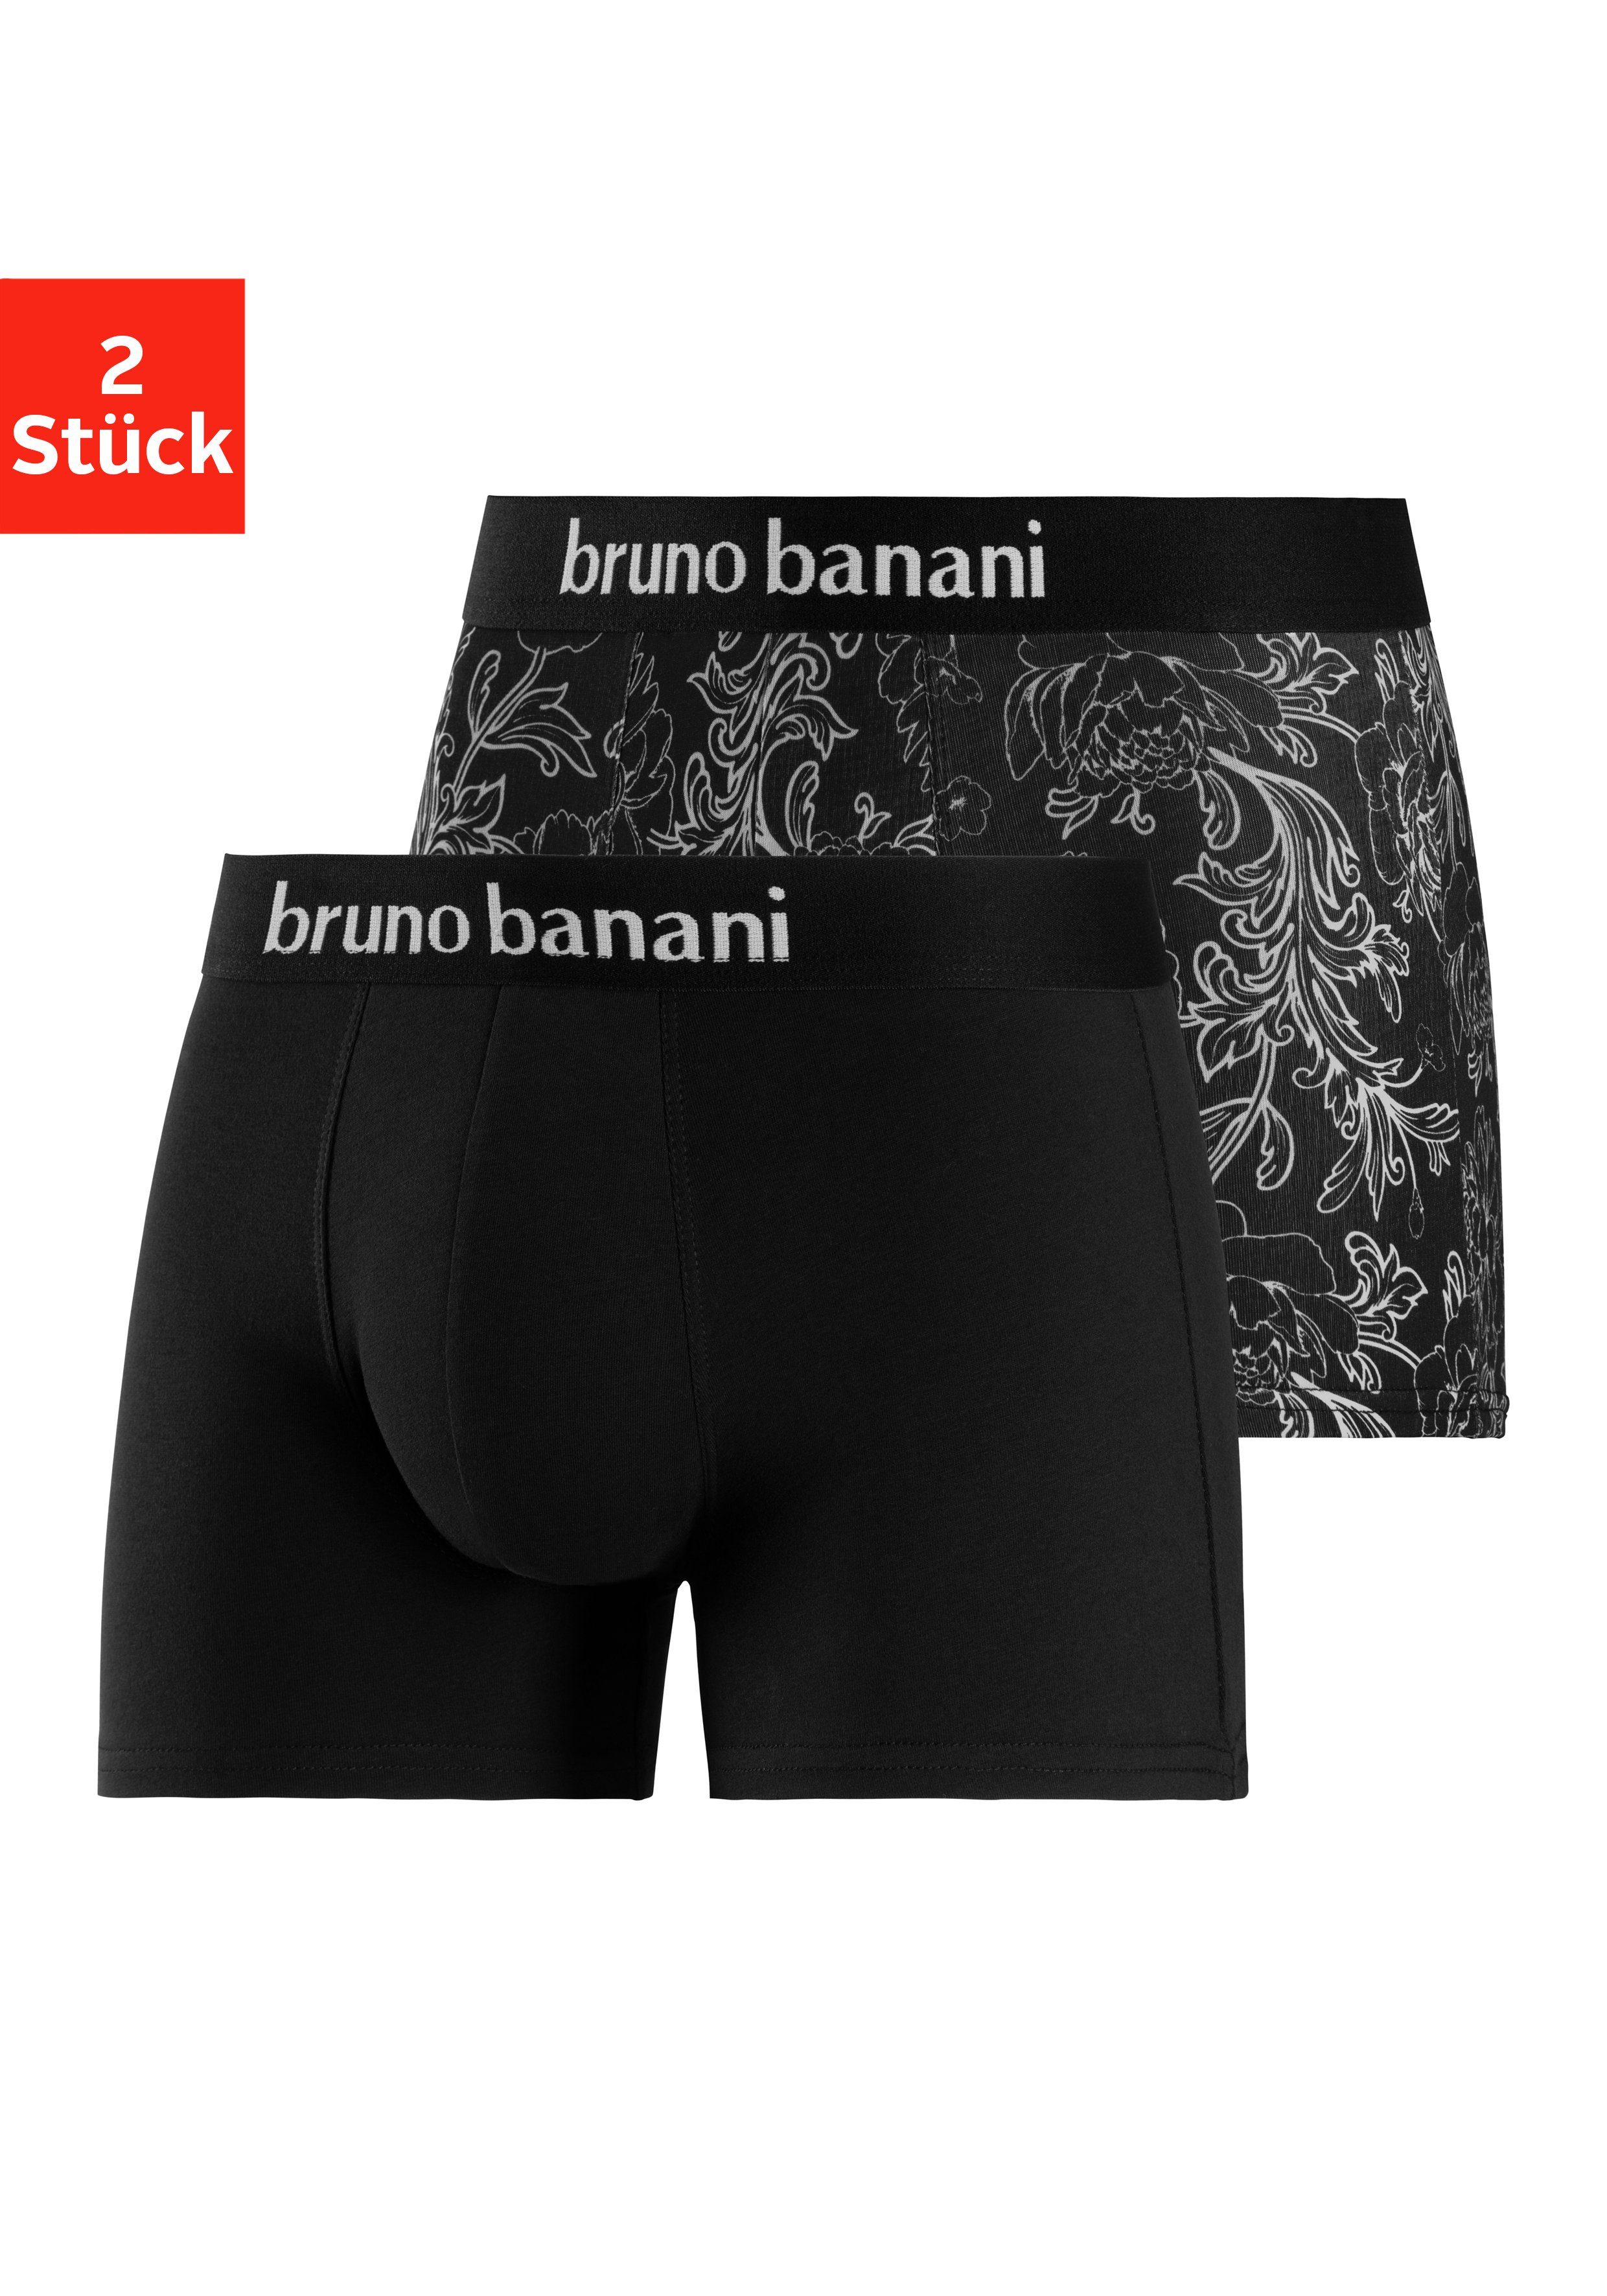 Bruno Banani Herrenunterwäsche online kaufen | OTTO